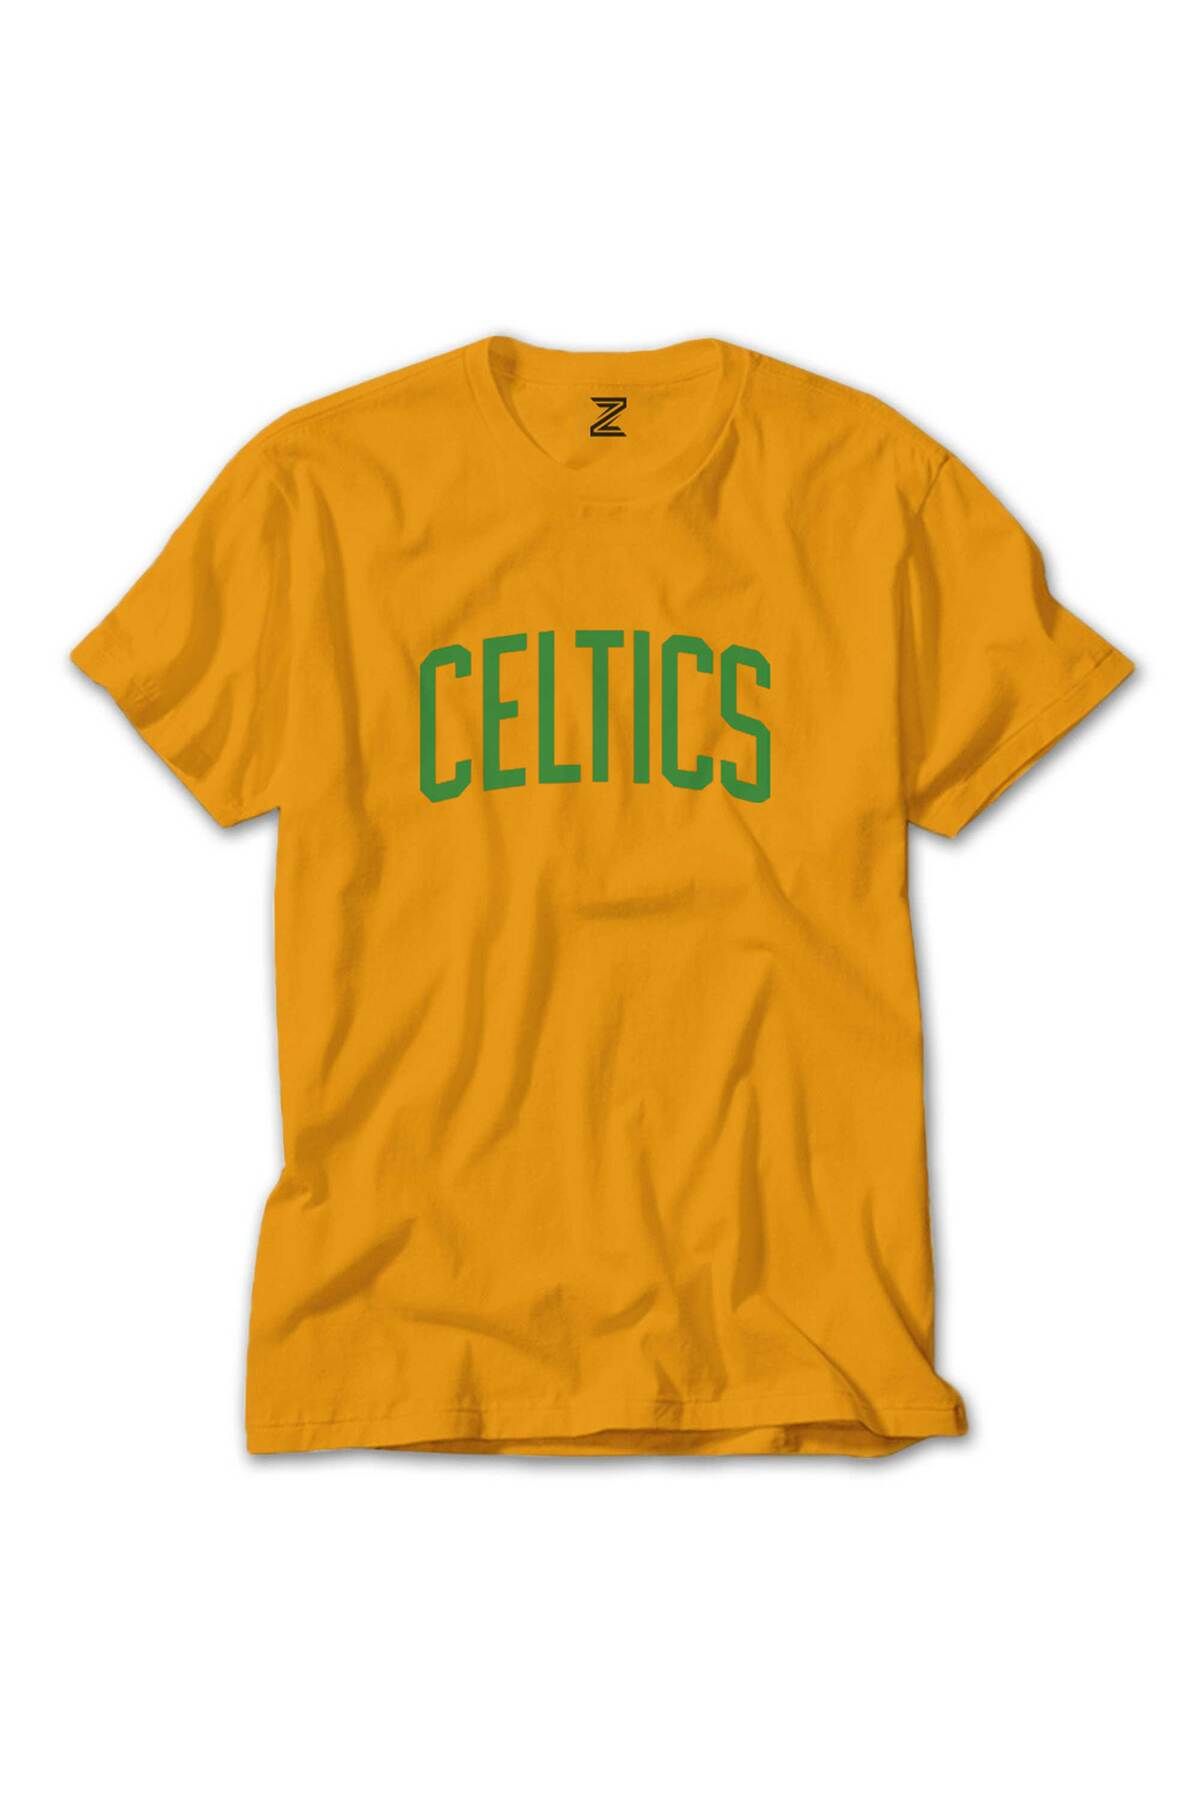 Tomris Hatun Boston Celtics Yazı Renkli Tişört Sarı Renkli M Beden